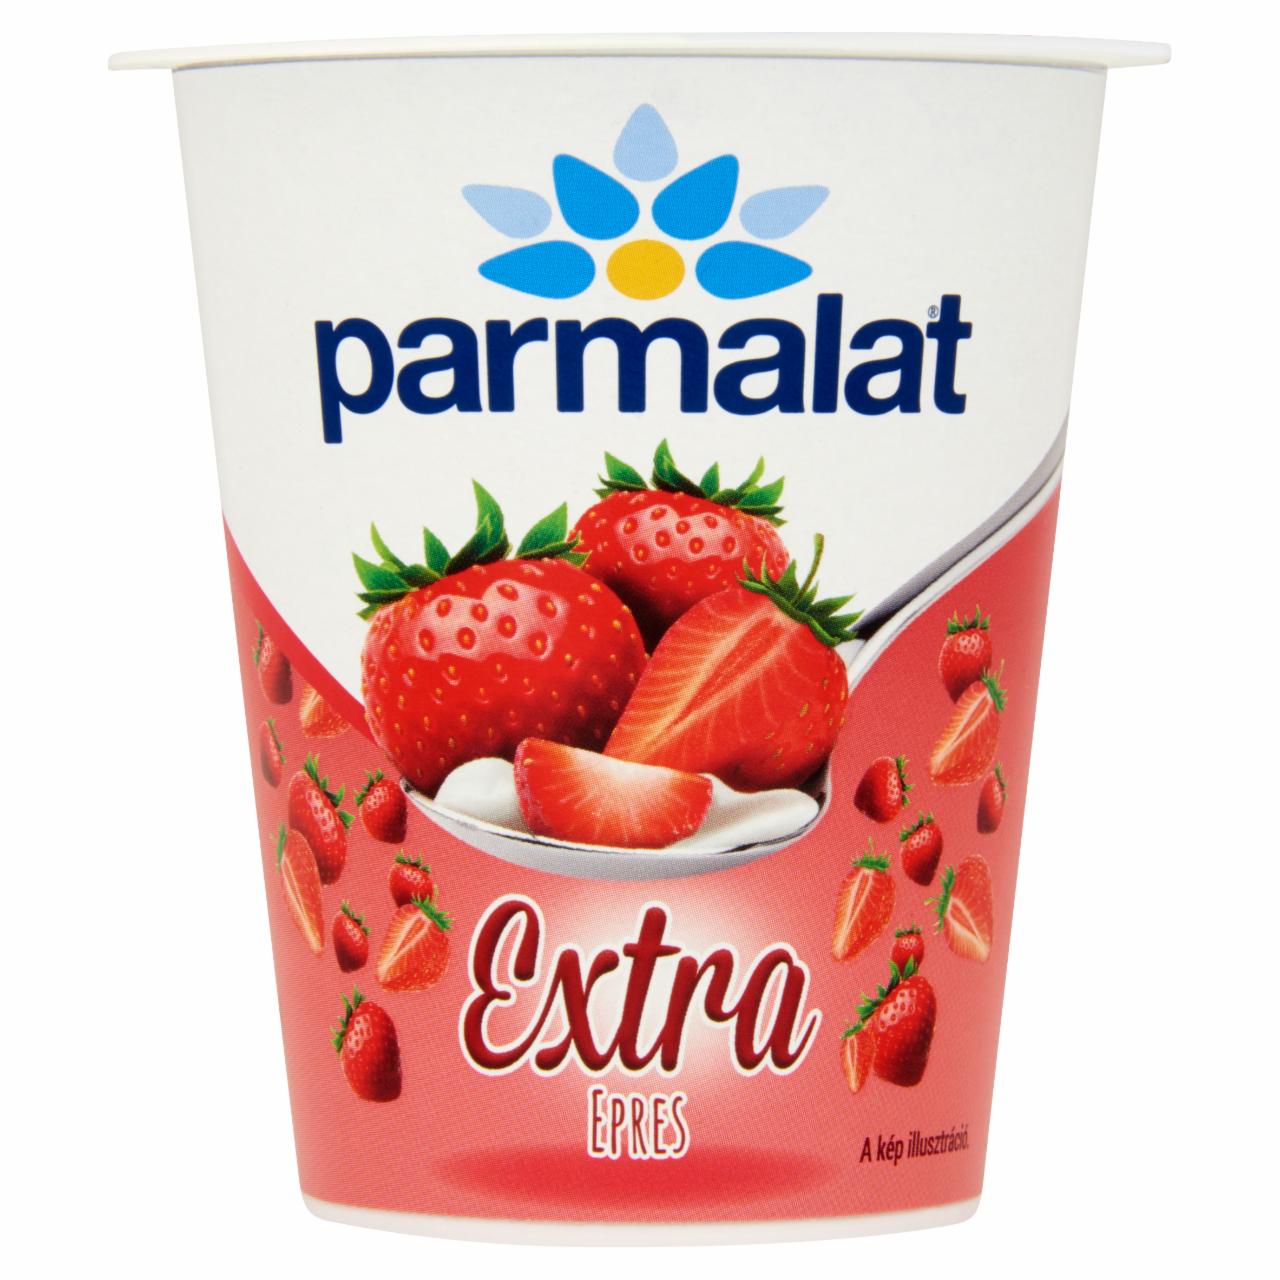 Képek - Parmalat Extra epres joghurt 140 g